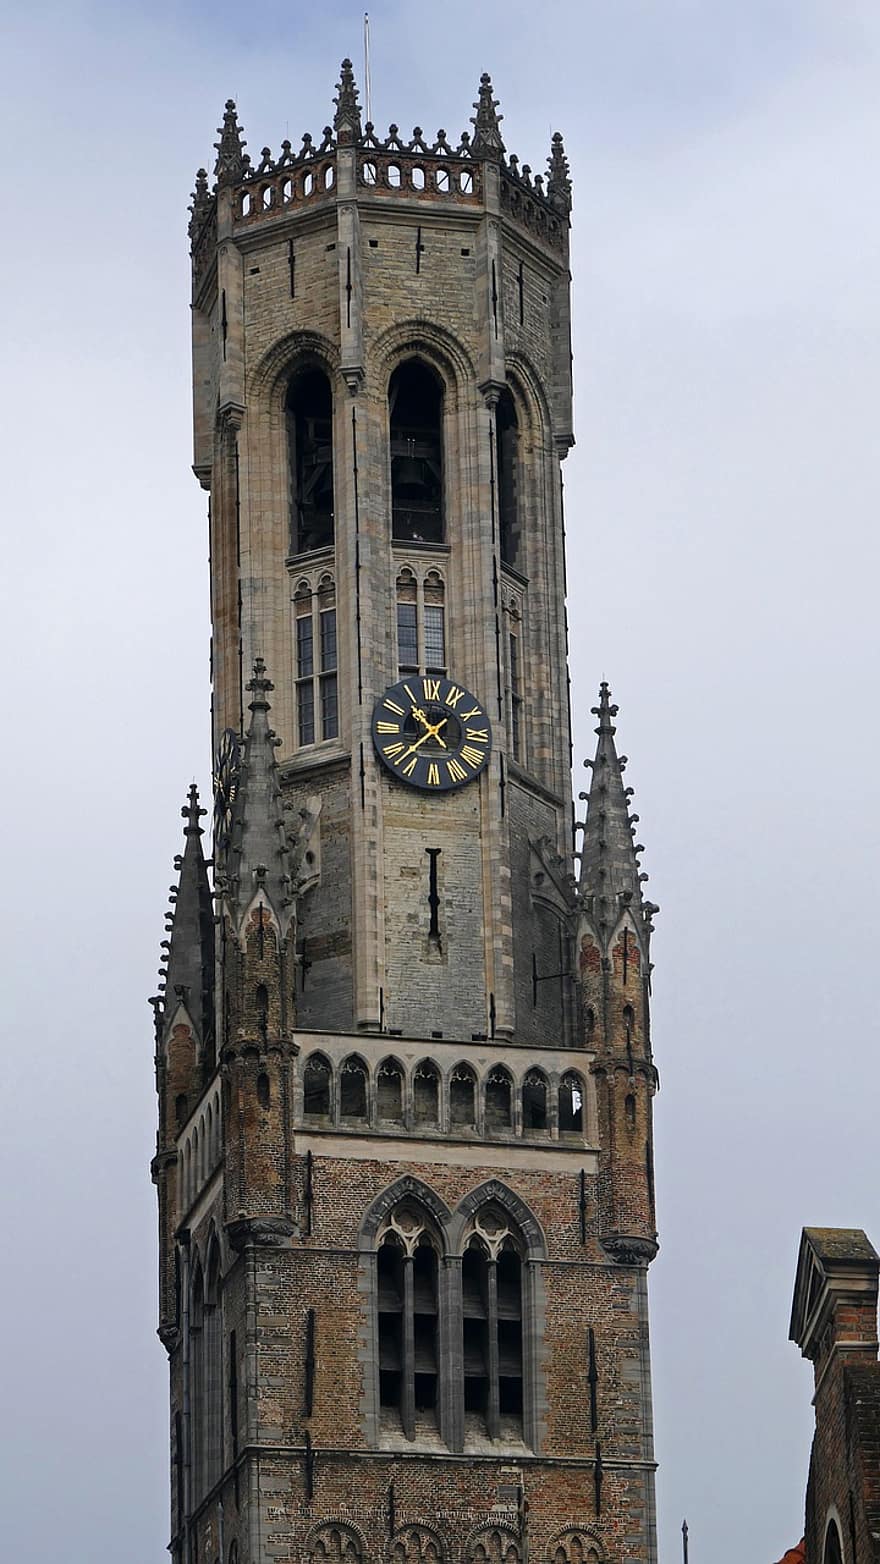 costruzione, architettura, Bruges, Belgio, Luoghi di interesse, escursioni, turismo, romantico, idillio, campanile